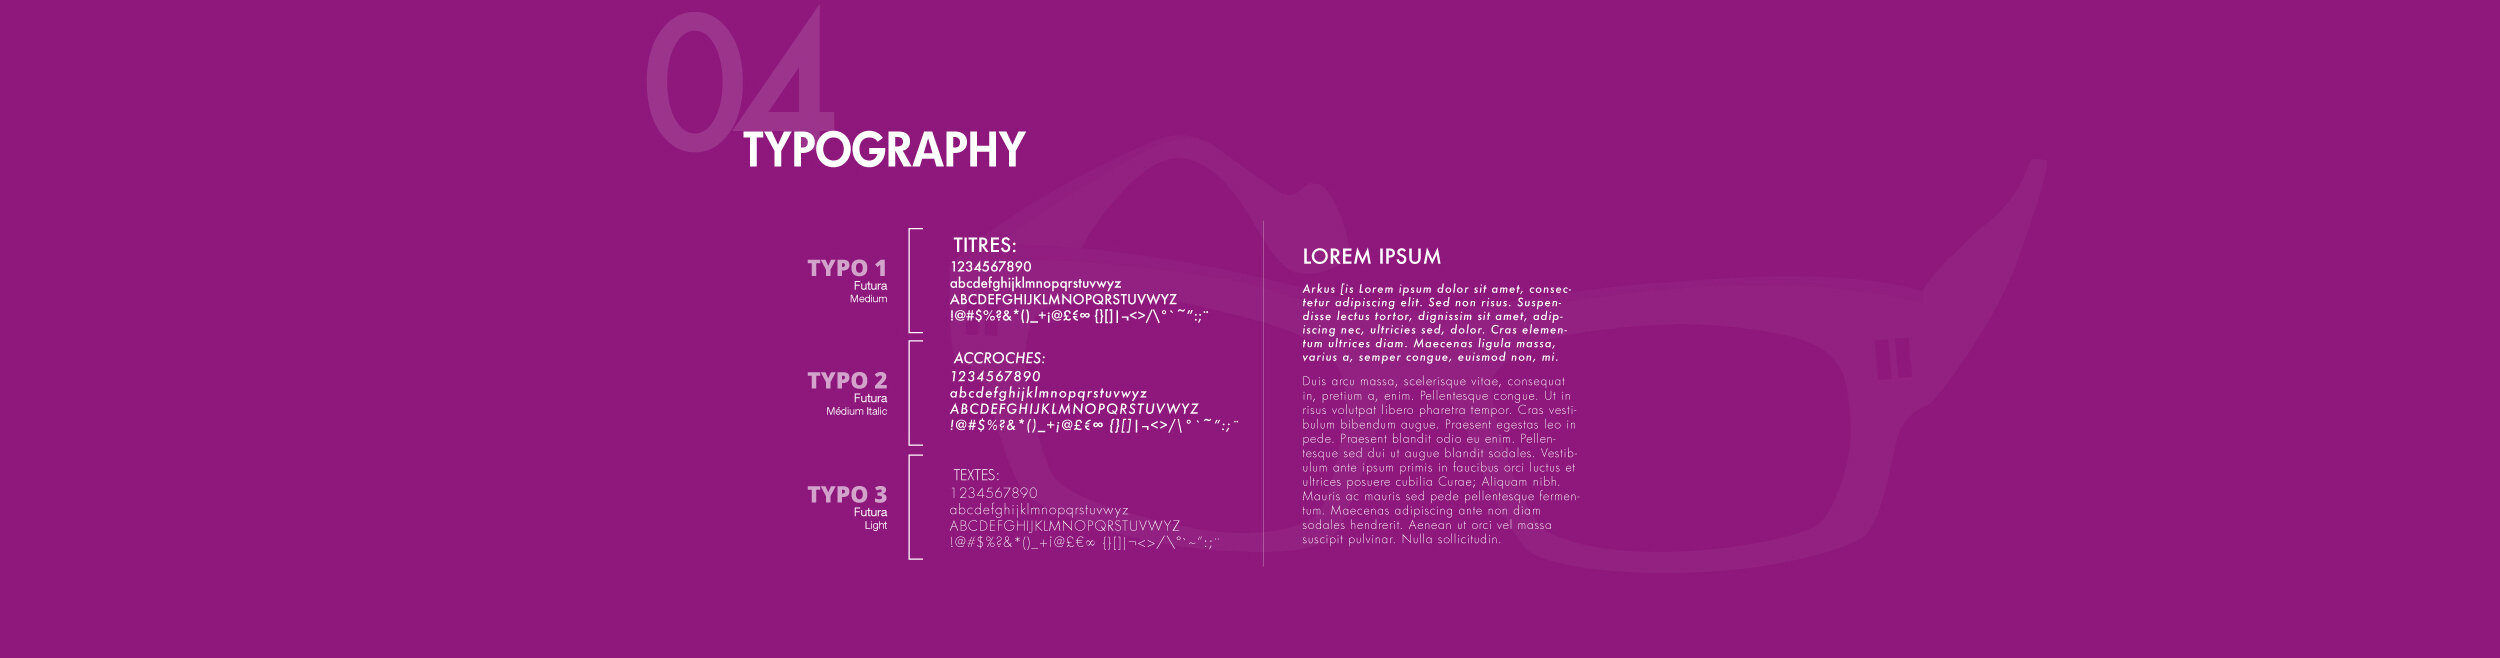 Choix de typographie pour À Propos d'Optique